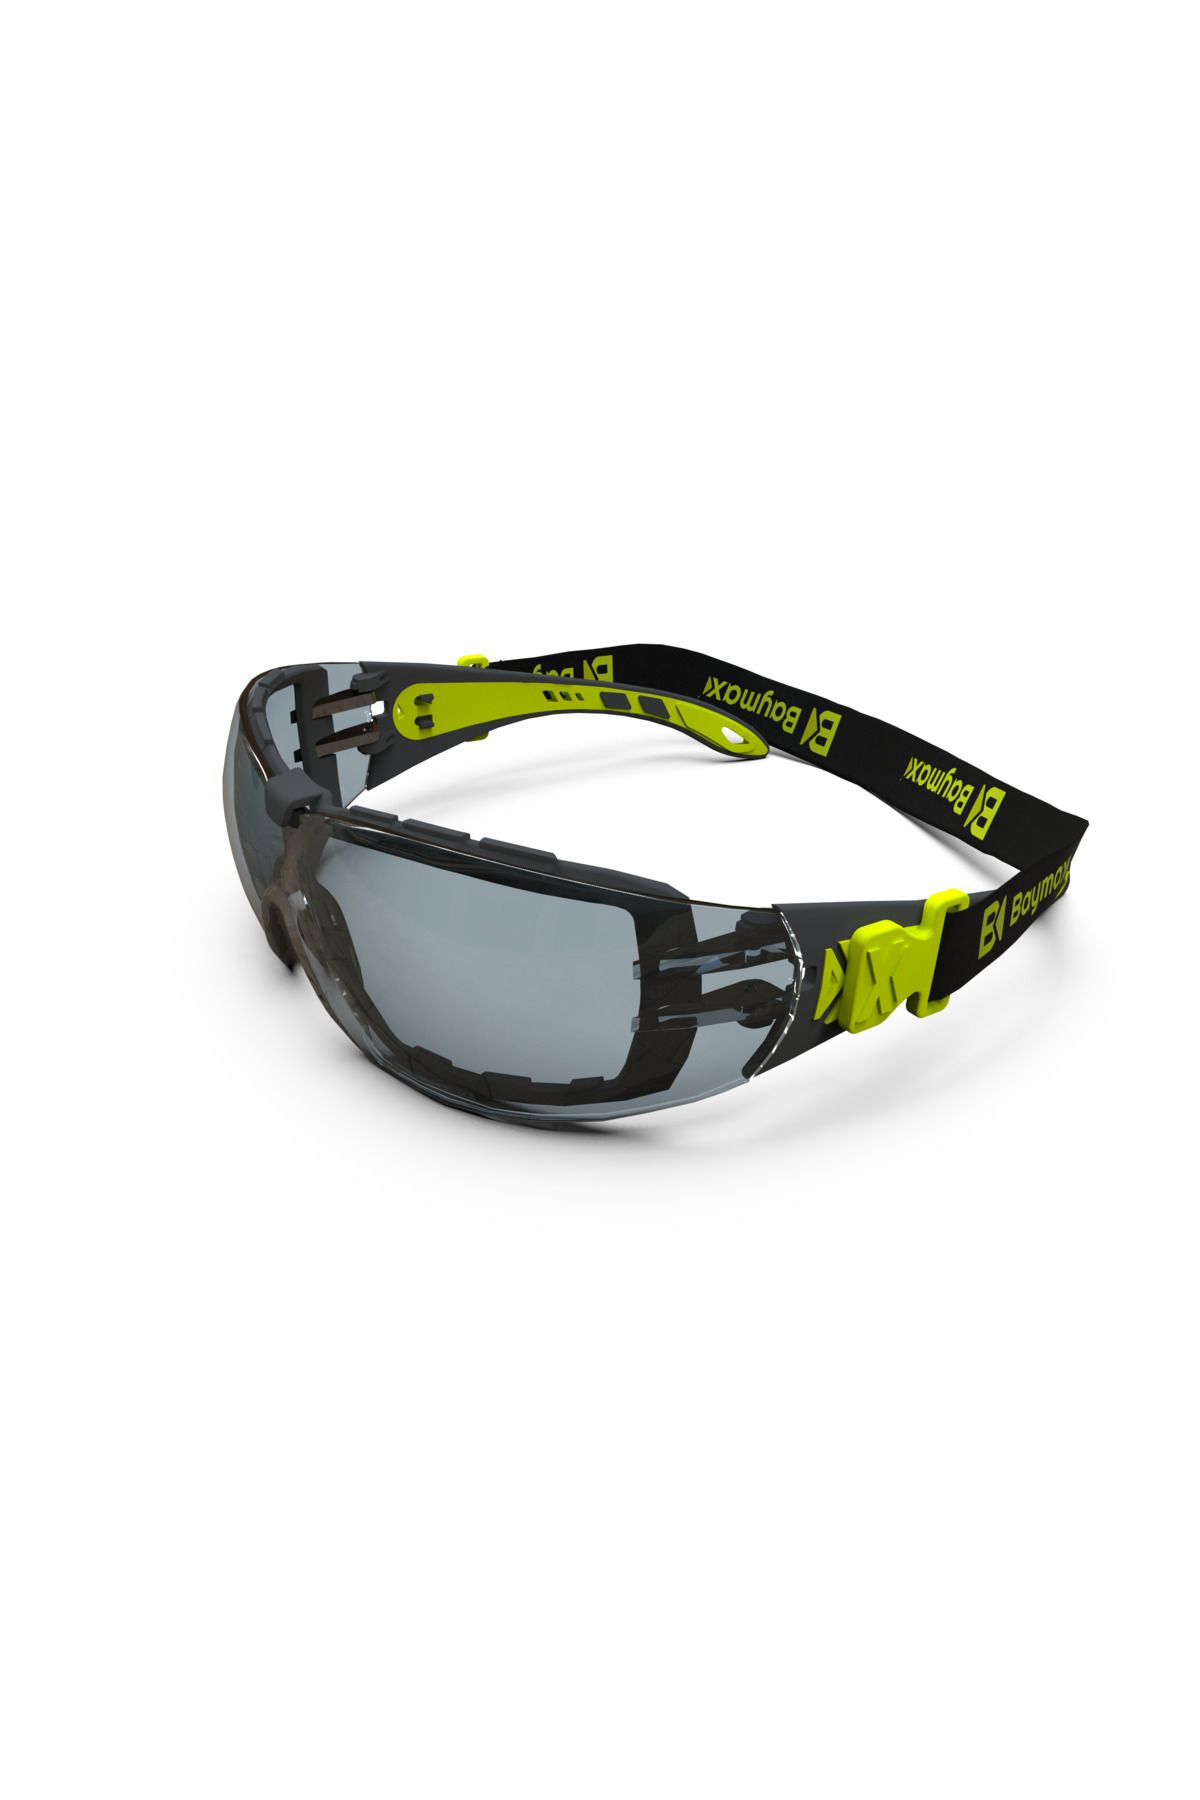 Baymax Koruyucu Gözlük Bx-2500 Comfort Dual Füme Buğulanmaz Antifog Iş Güvenliği Gözlük